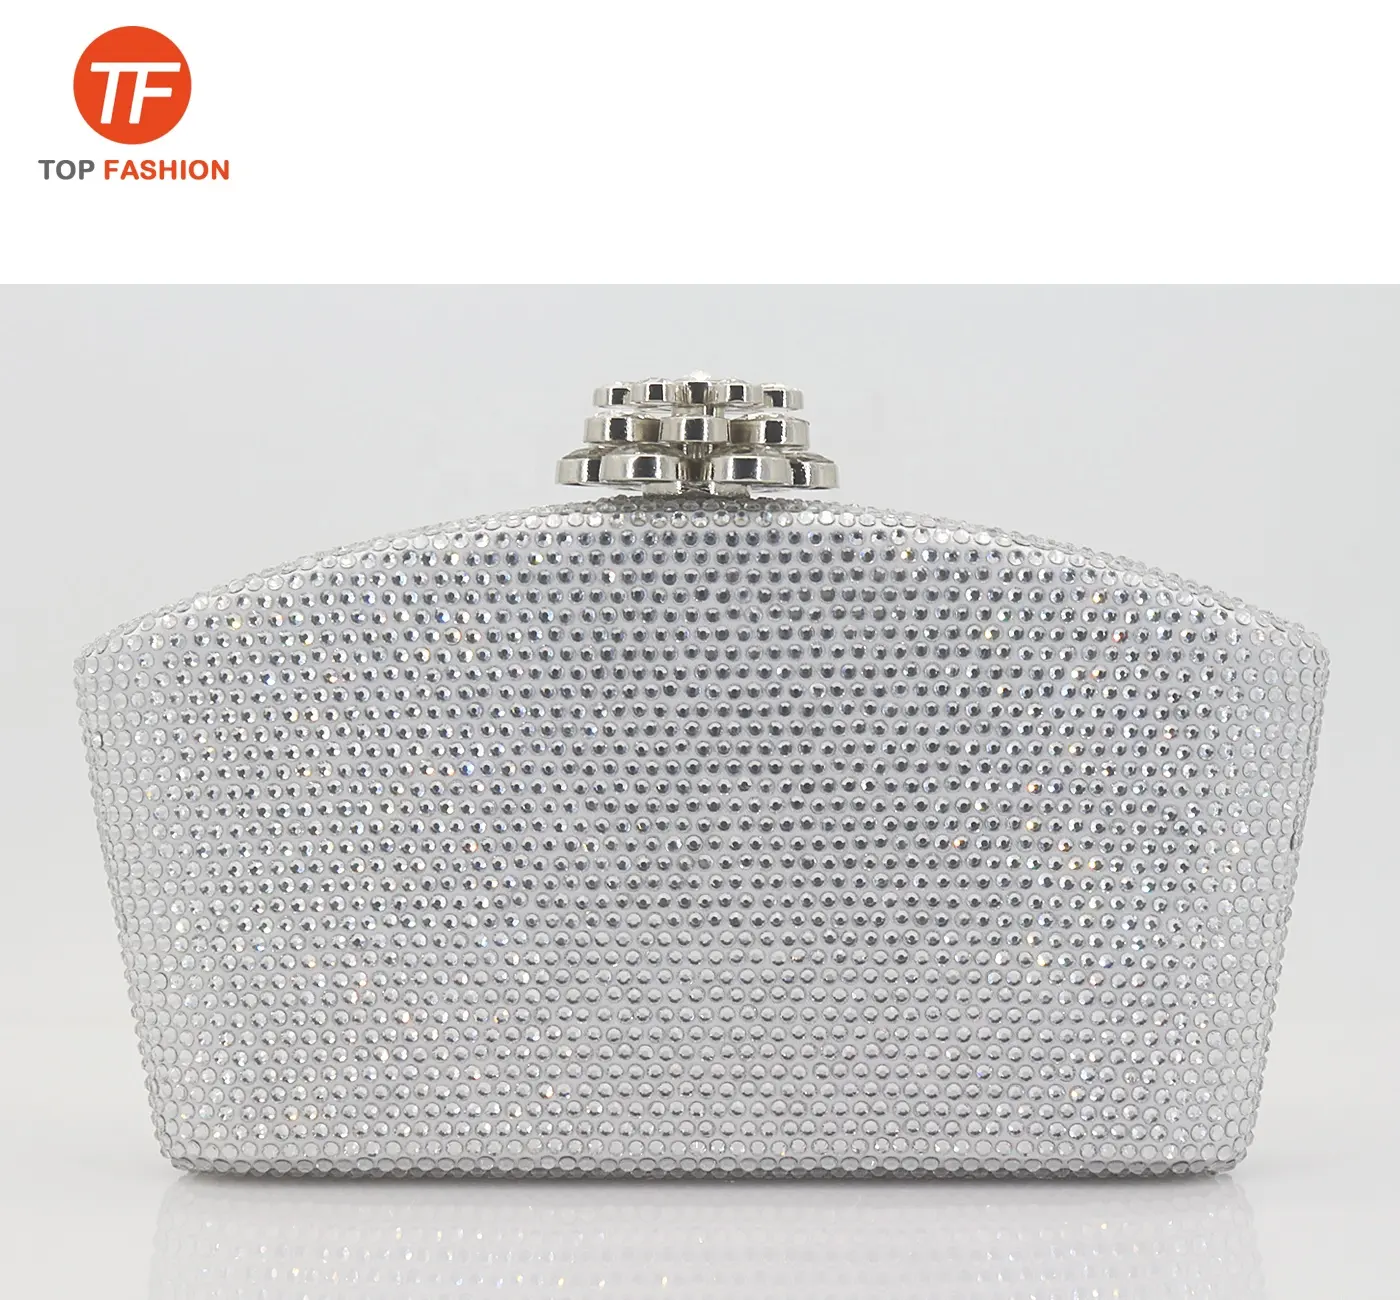 Fábrica al por mayor de diamantes de imitación de cristal caja de embrague con diamante flor broche de plata bolso de noche para fiesta de boda